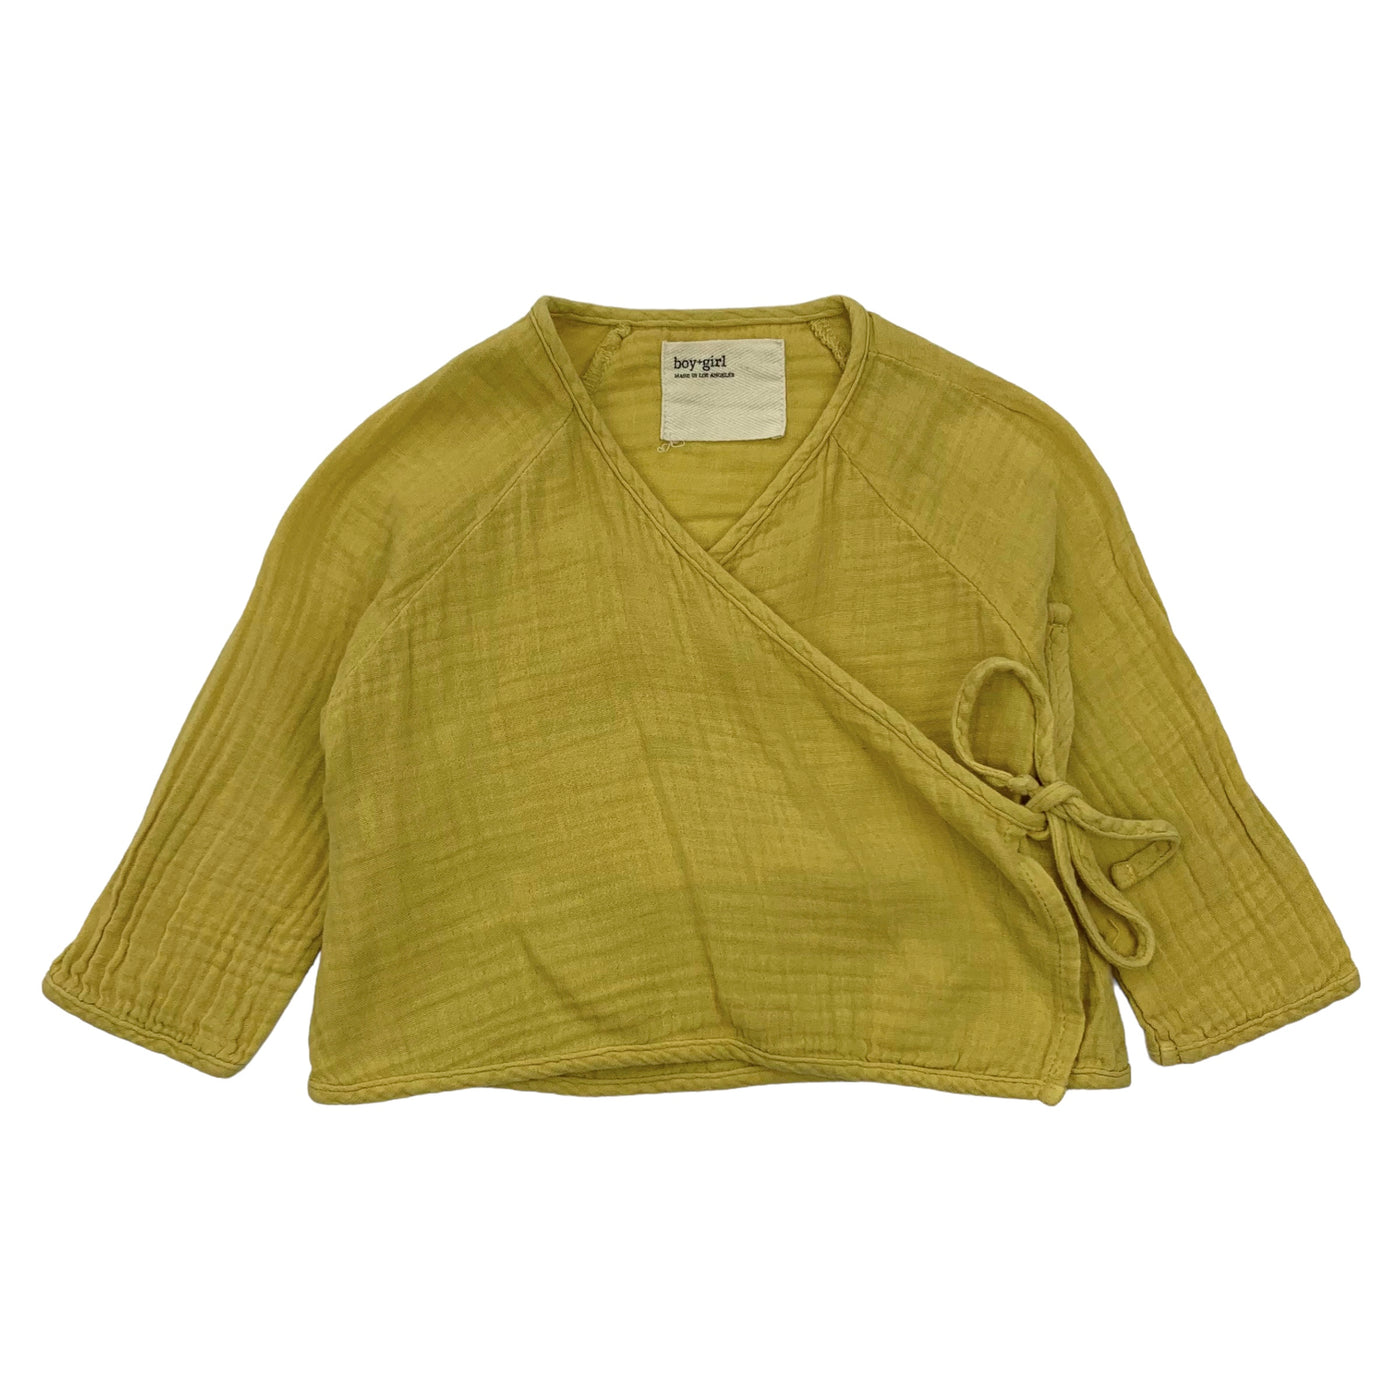 Boy+Girls LA kimono blouse yellow 6 - 12 months